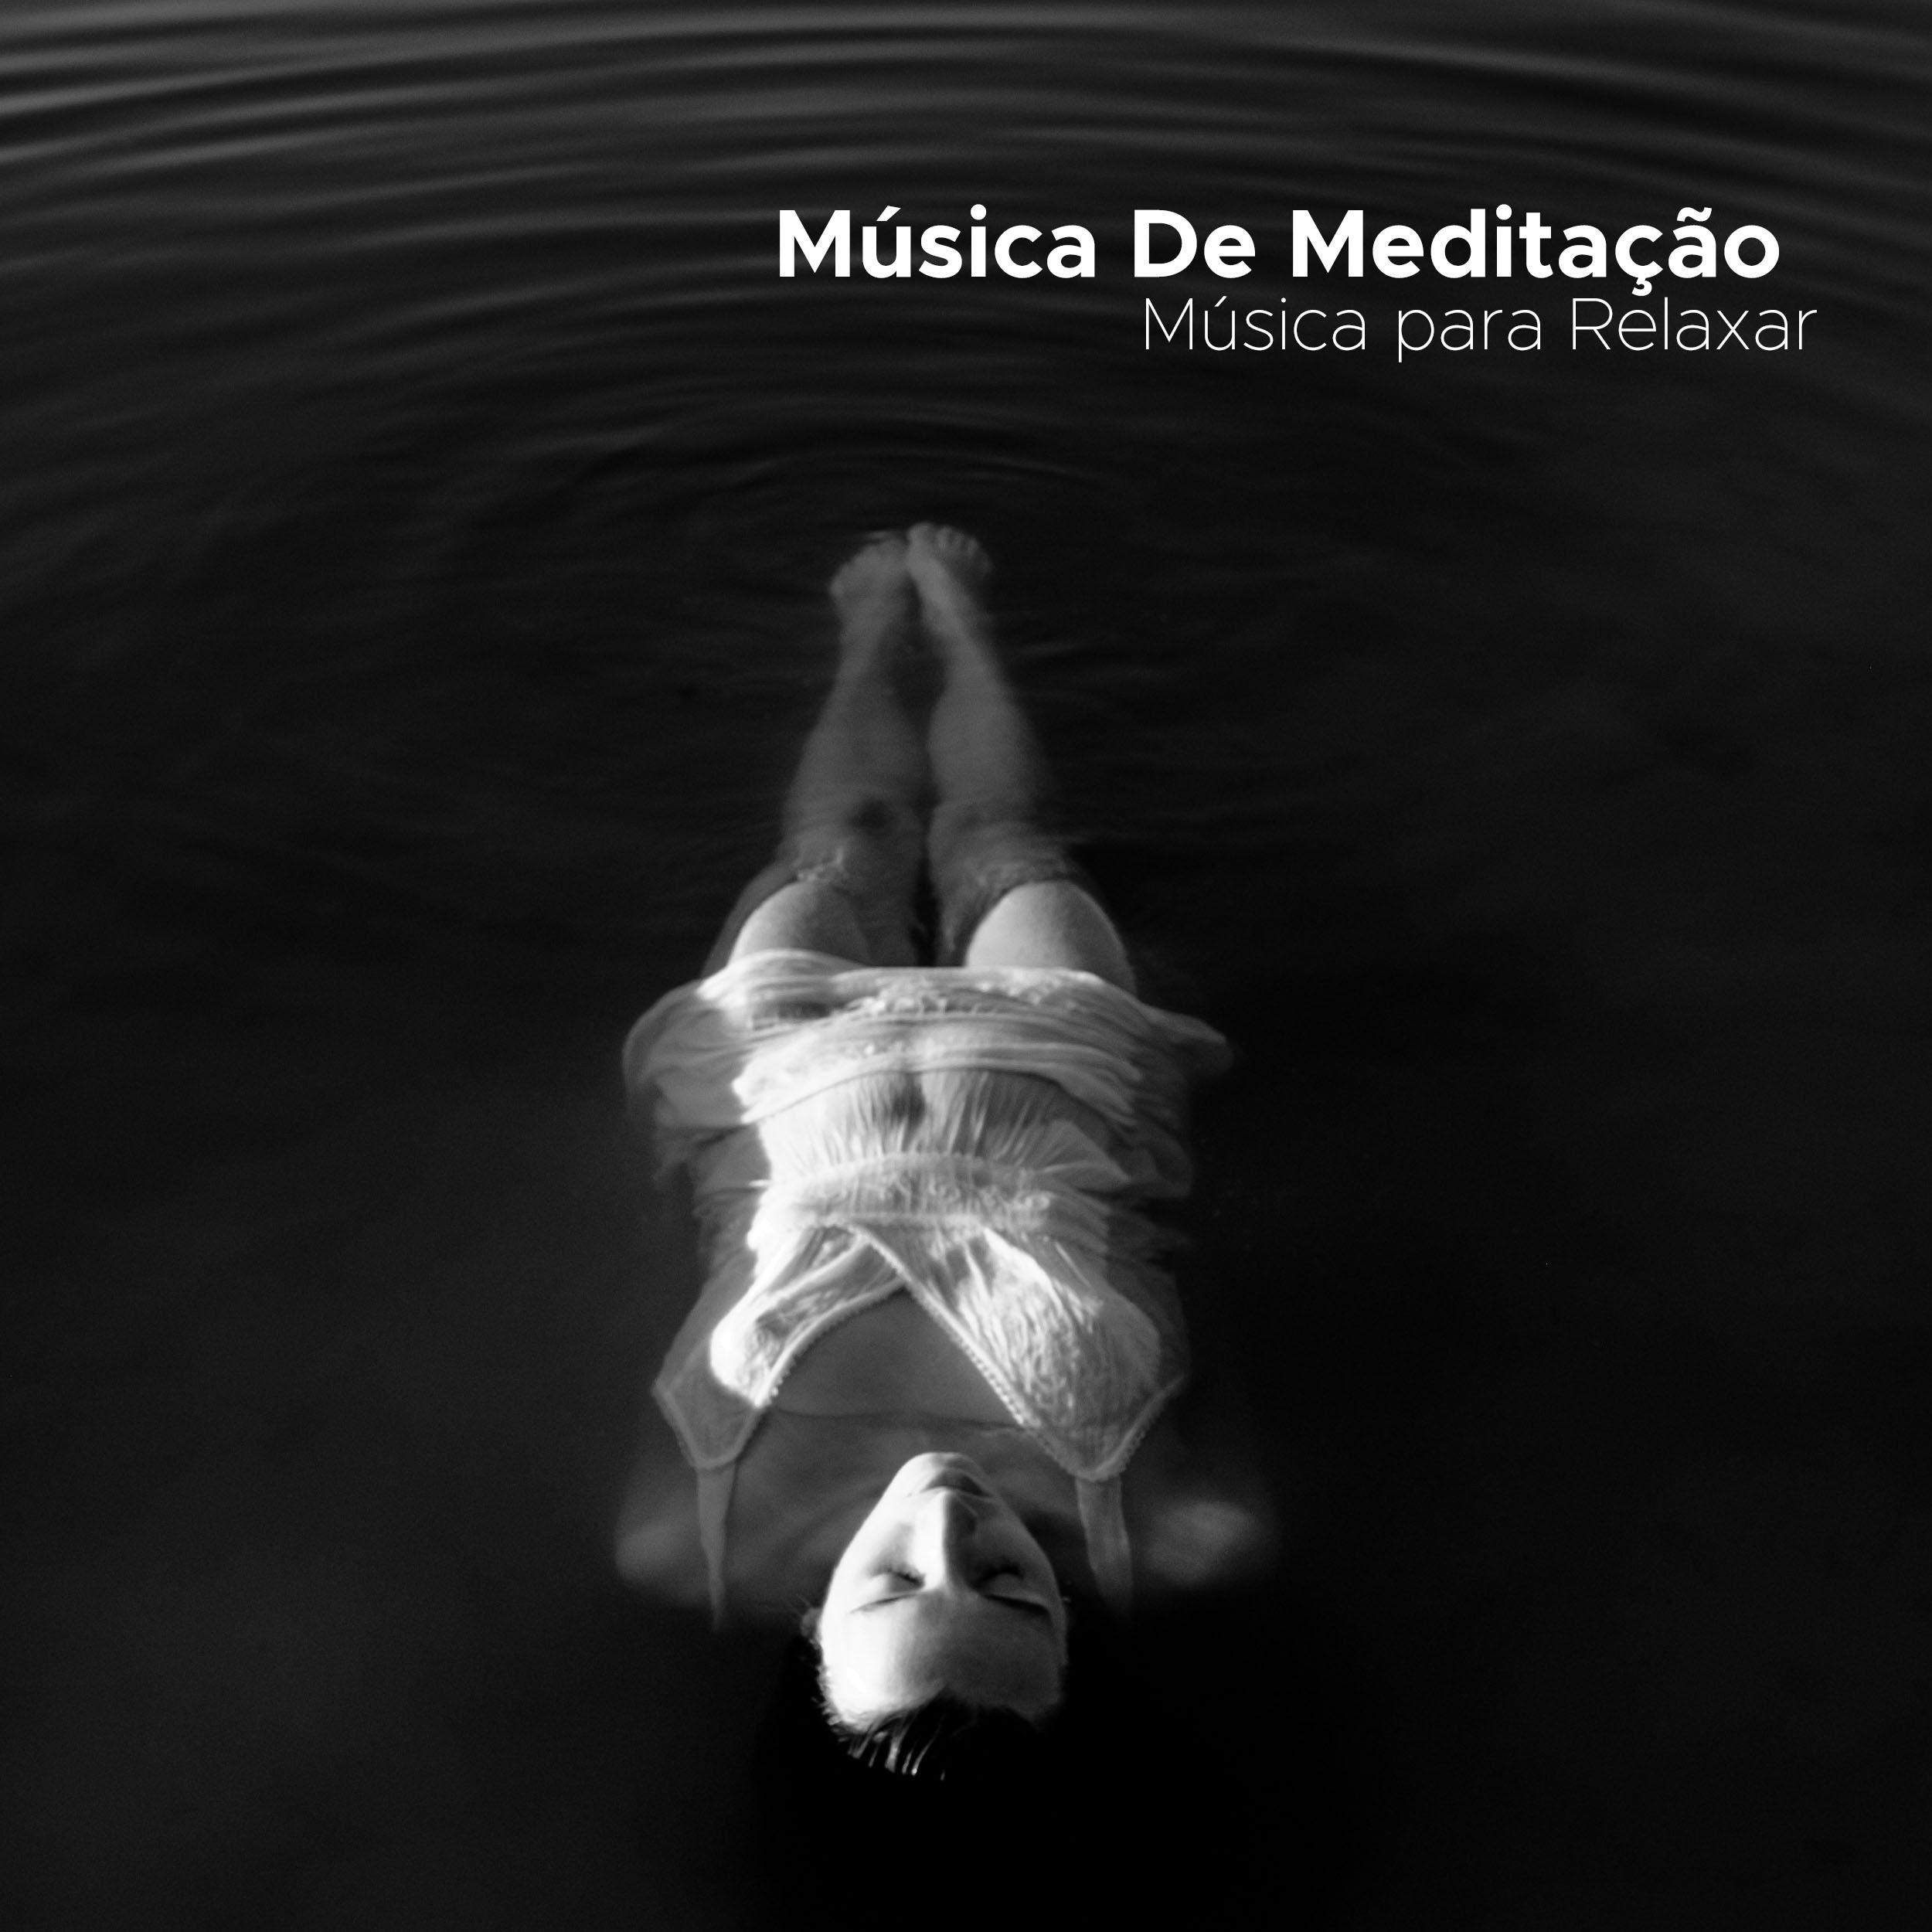 Musica De Meditação - Musica para Relaxar